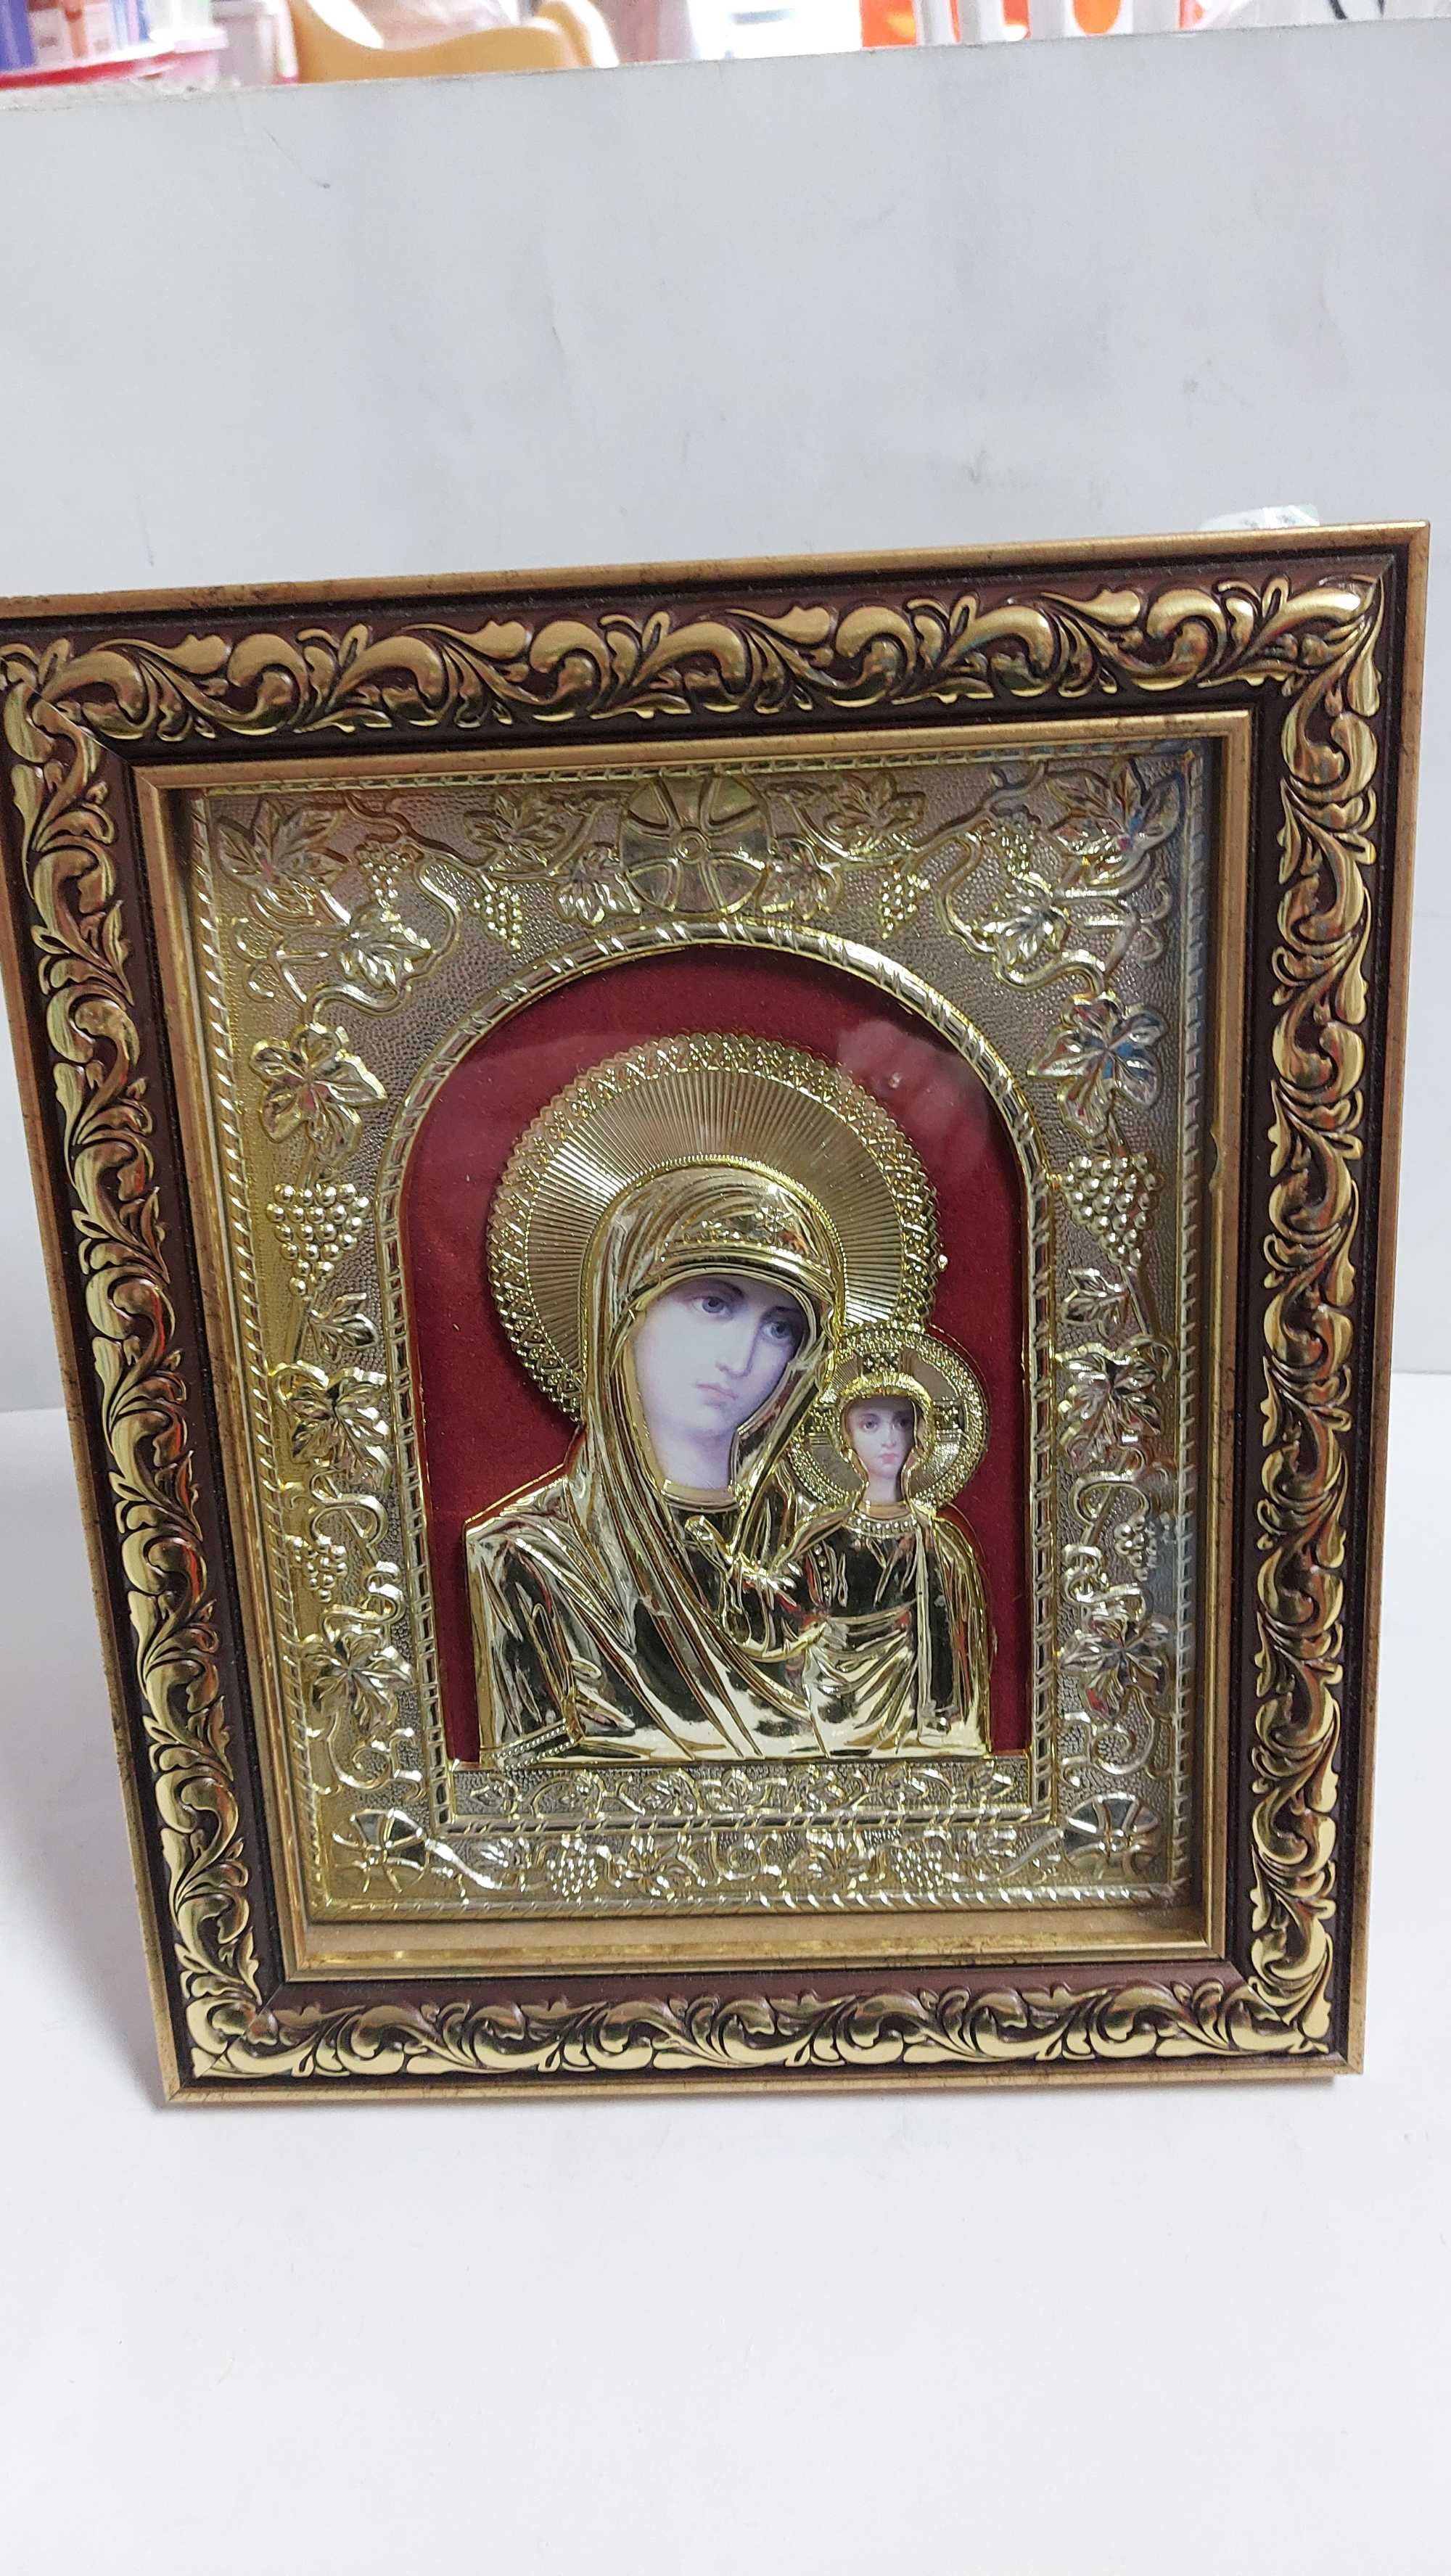 Икона Света Богородица